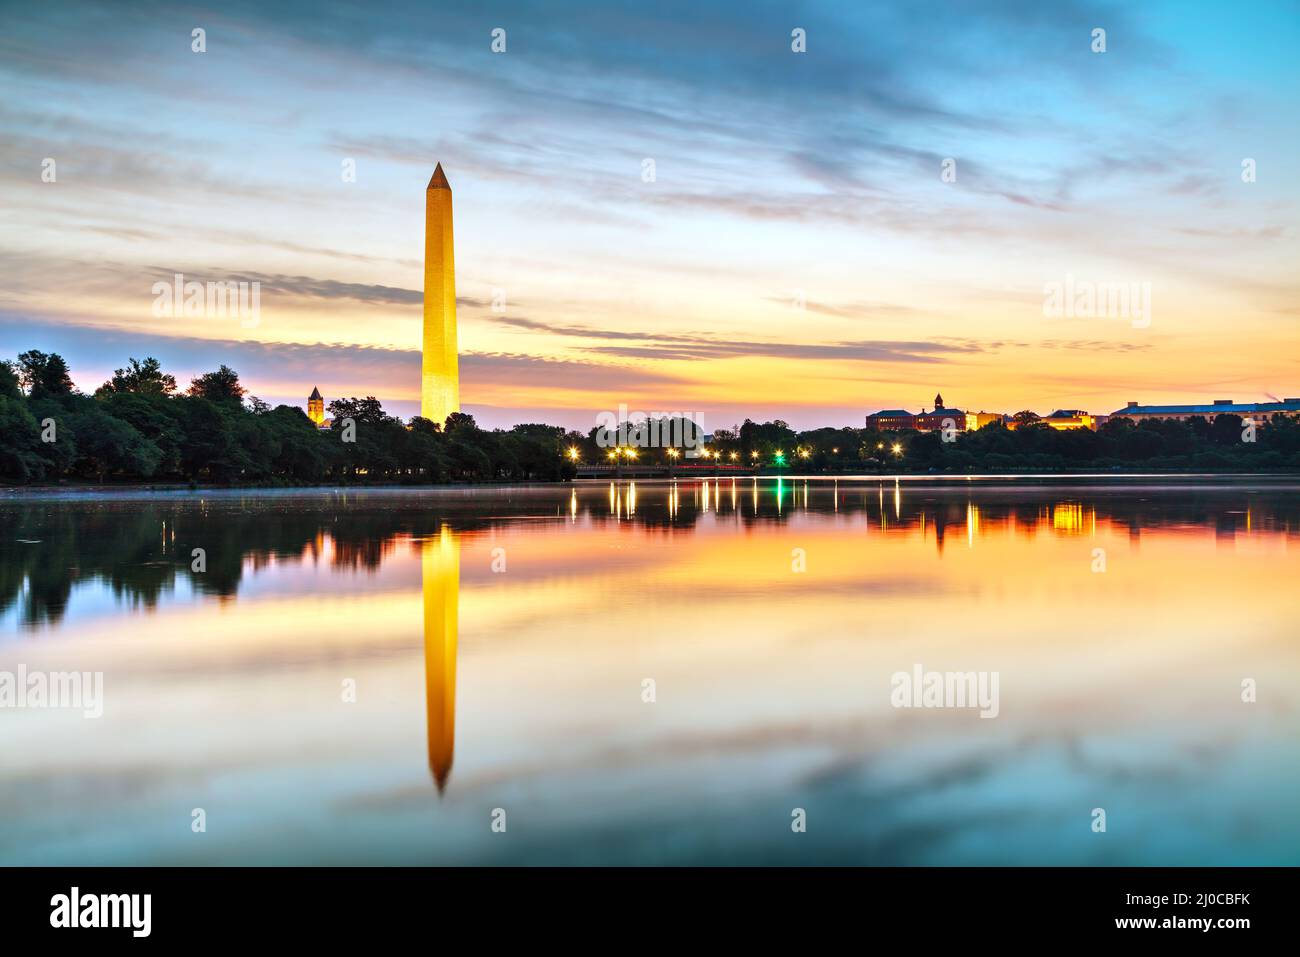 Washington Memorial monument in Washington, DC Stock Photo